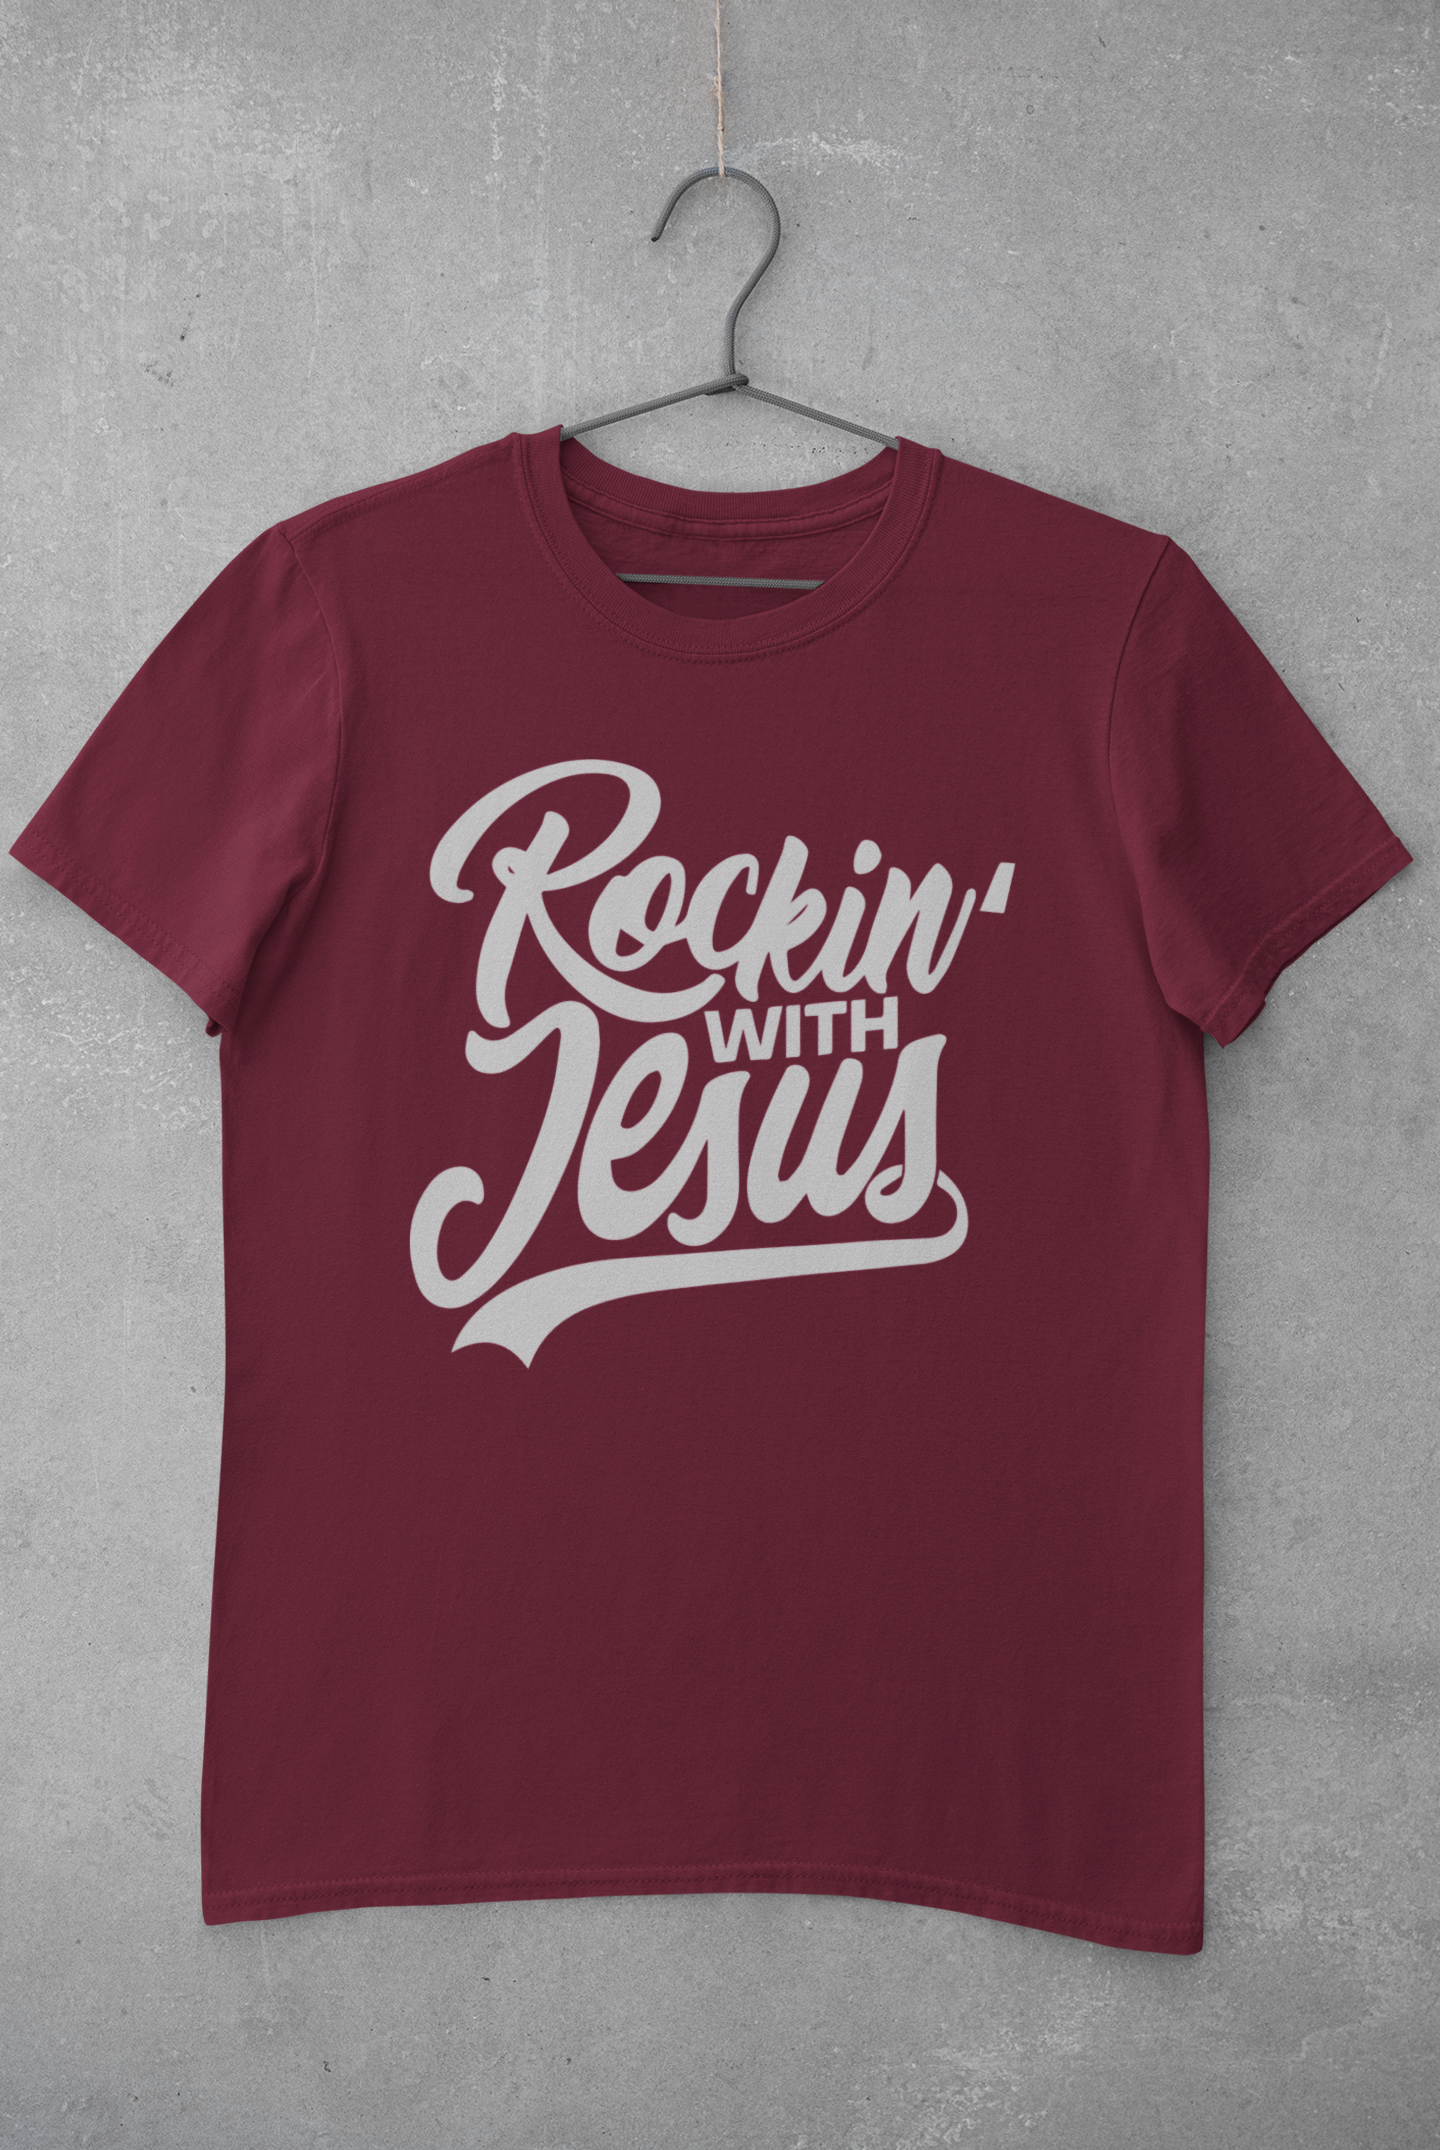 Rockin' With Jesus